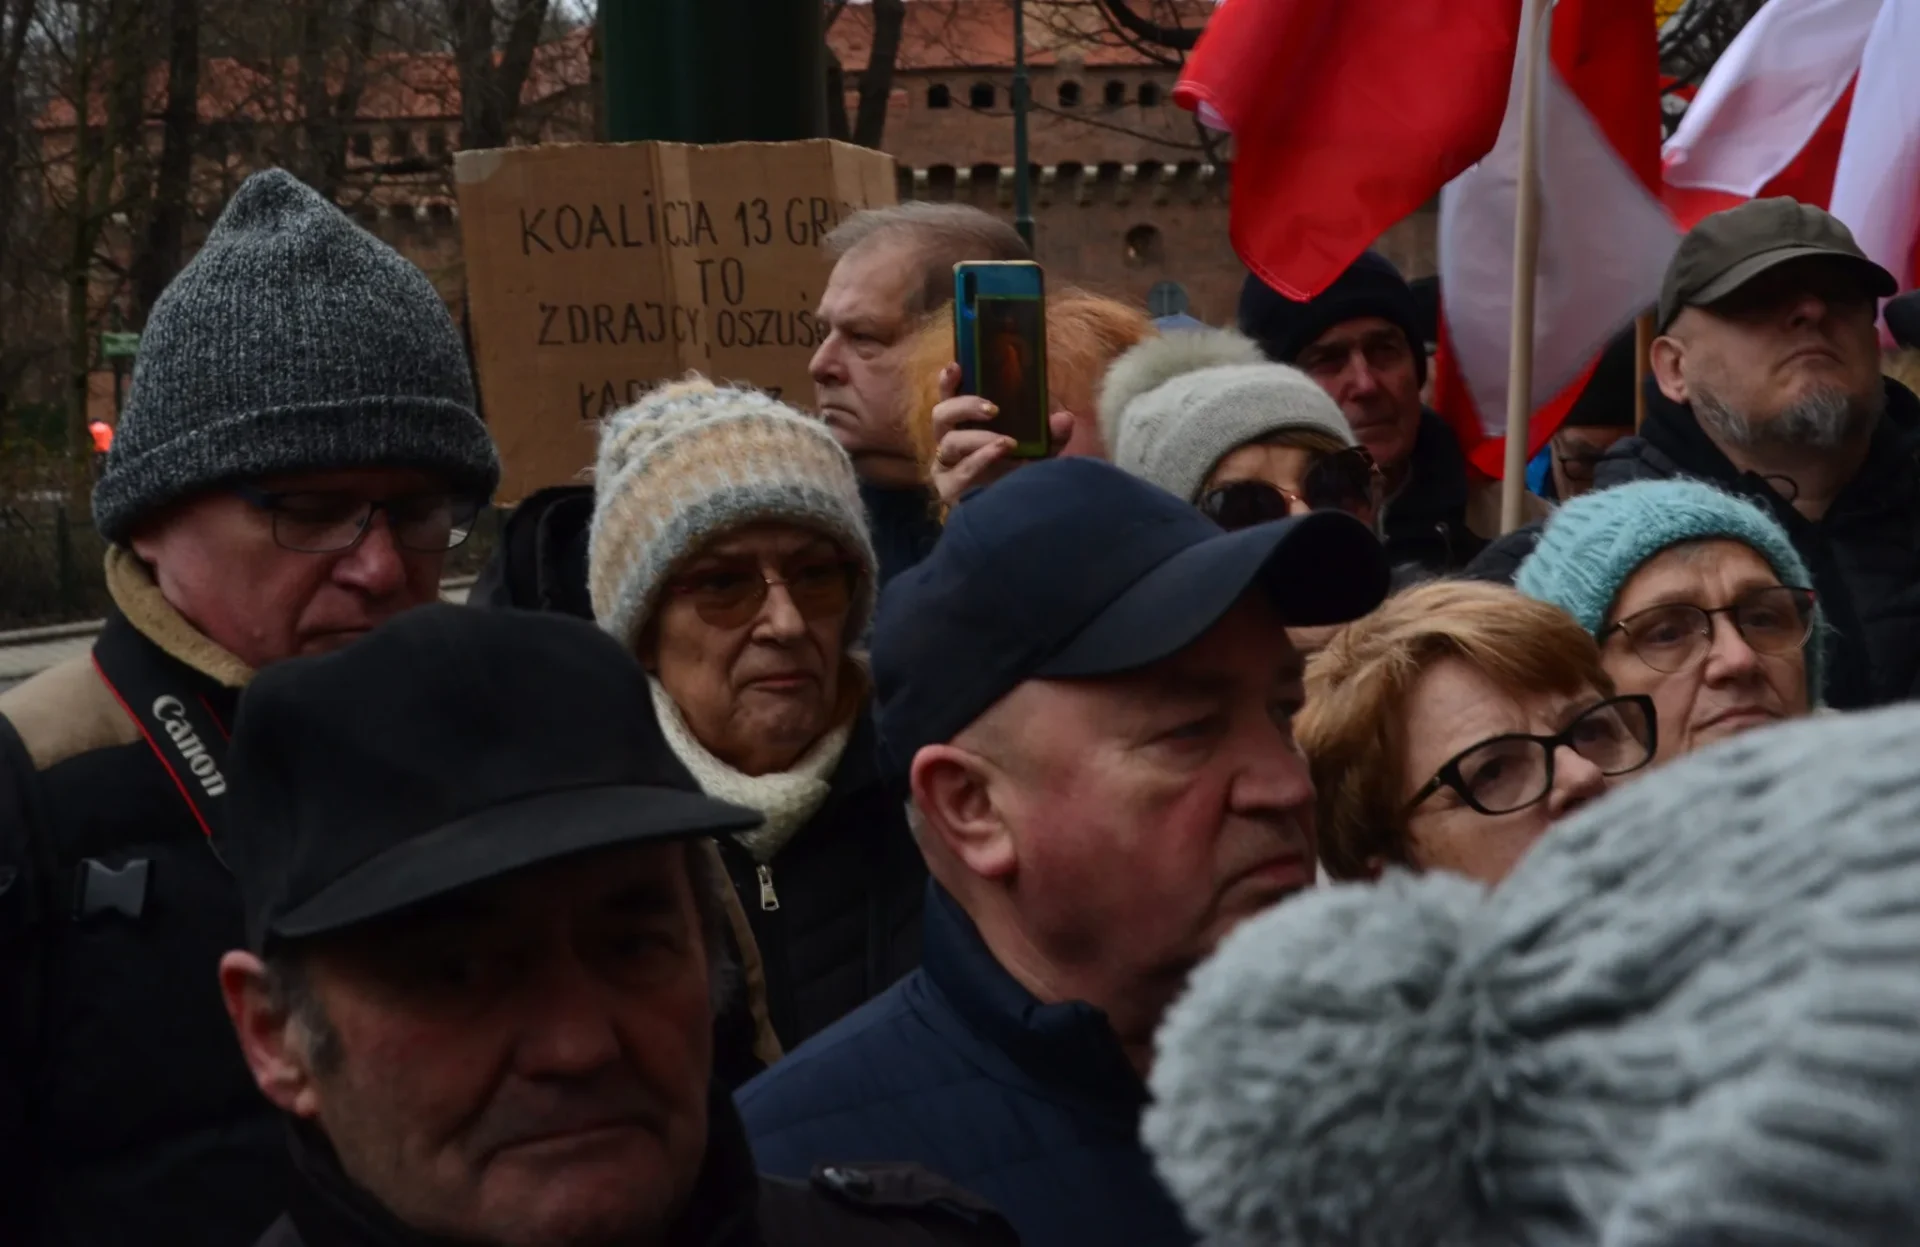 Manifestacja w obronie wolnych mediów, Kraków, 21 grudnia 2023 r.